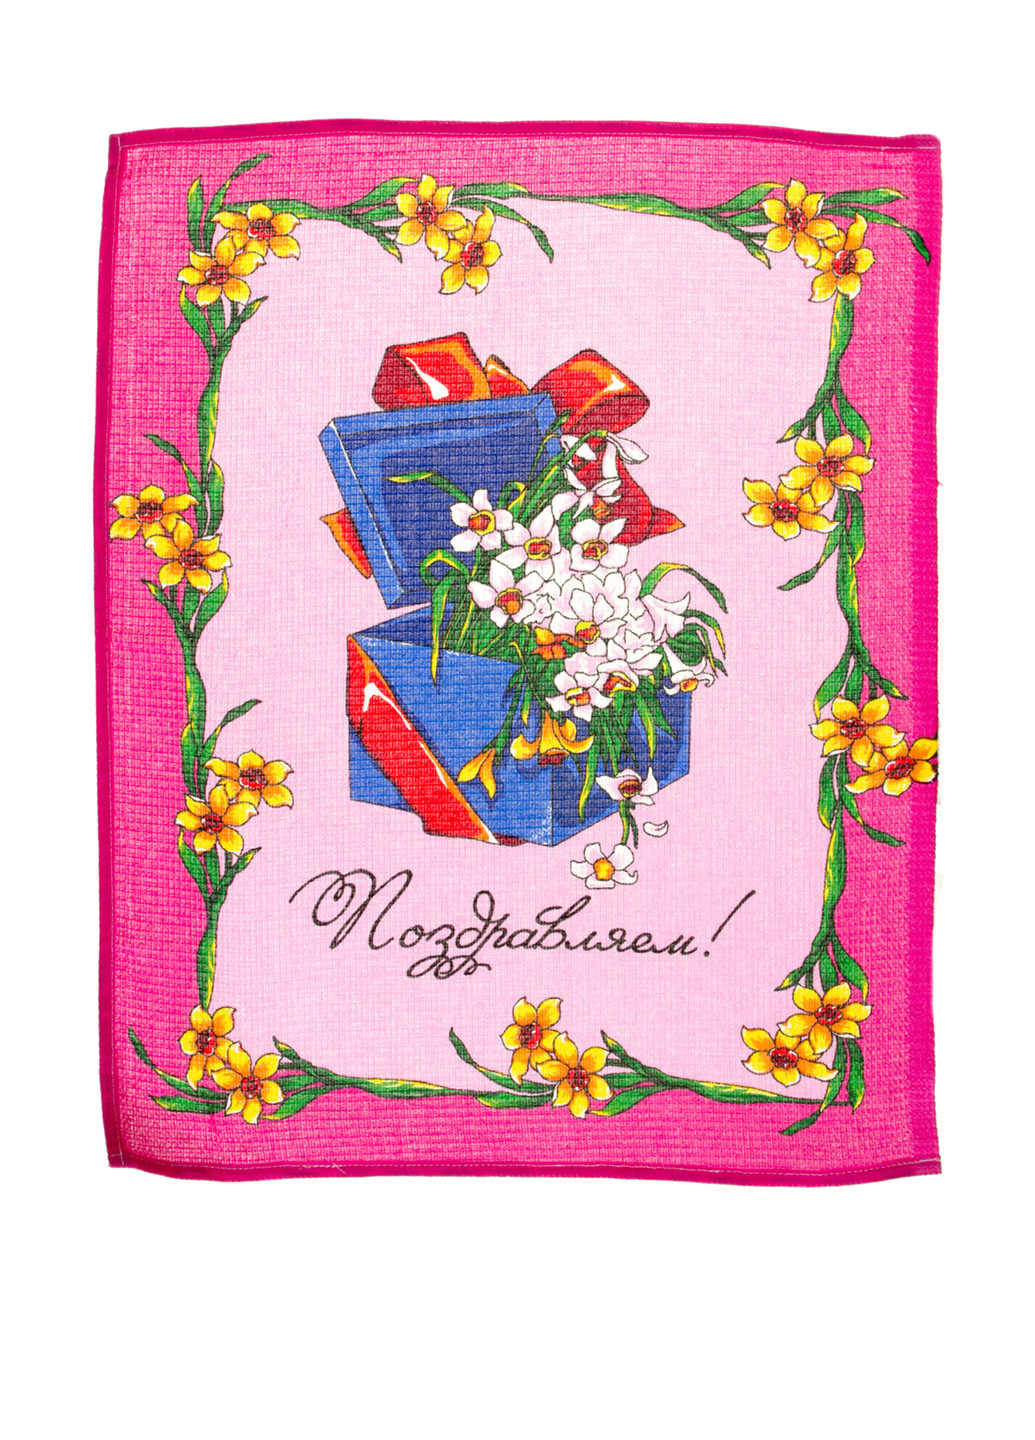 La Sana полотенце, 45*60 см рисунок розовый производство - Украина